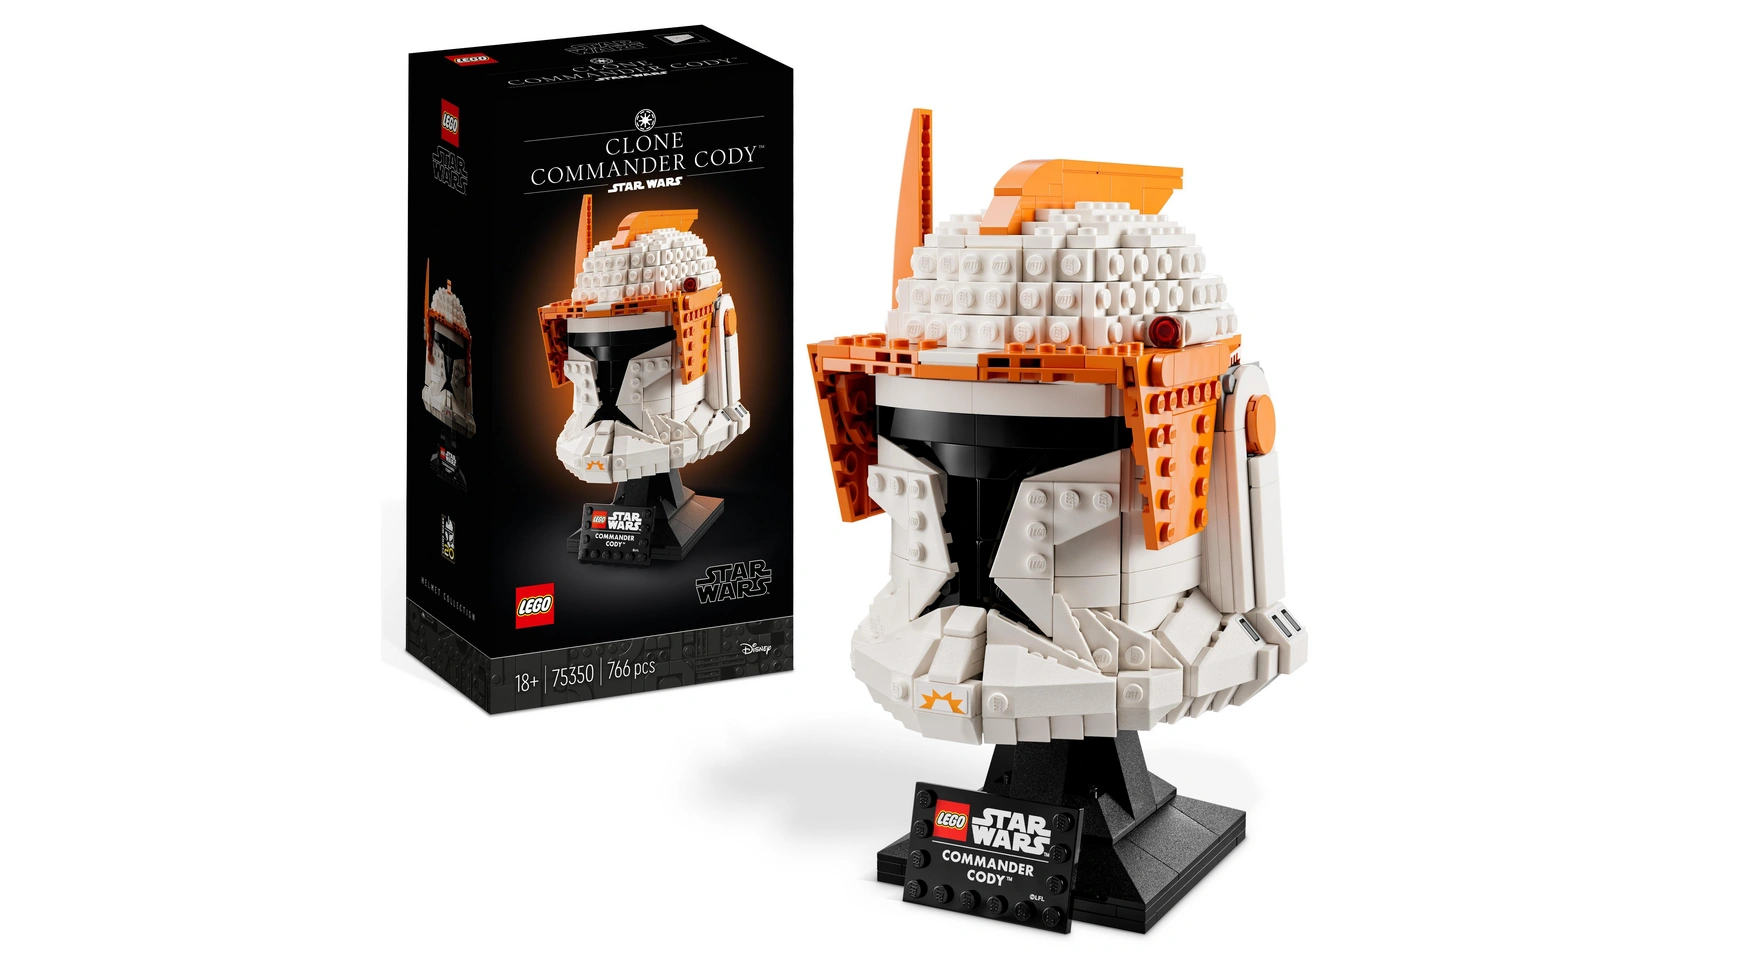 Lego Star Wars Набор шлемов командира клонов Коди для взрослых набор минифигурок клонов звездные войны